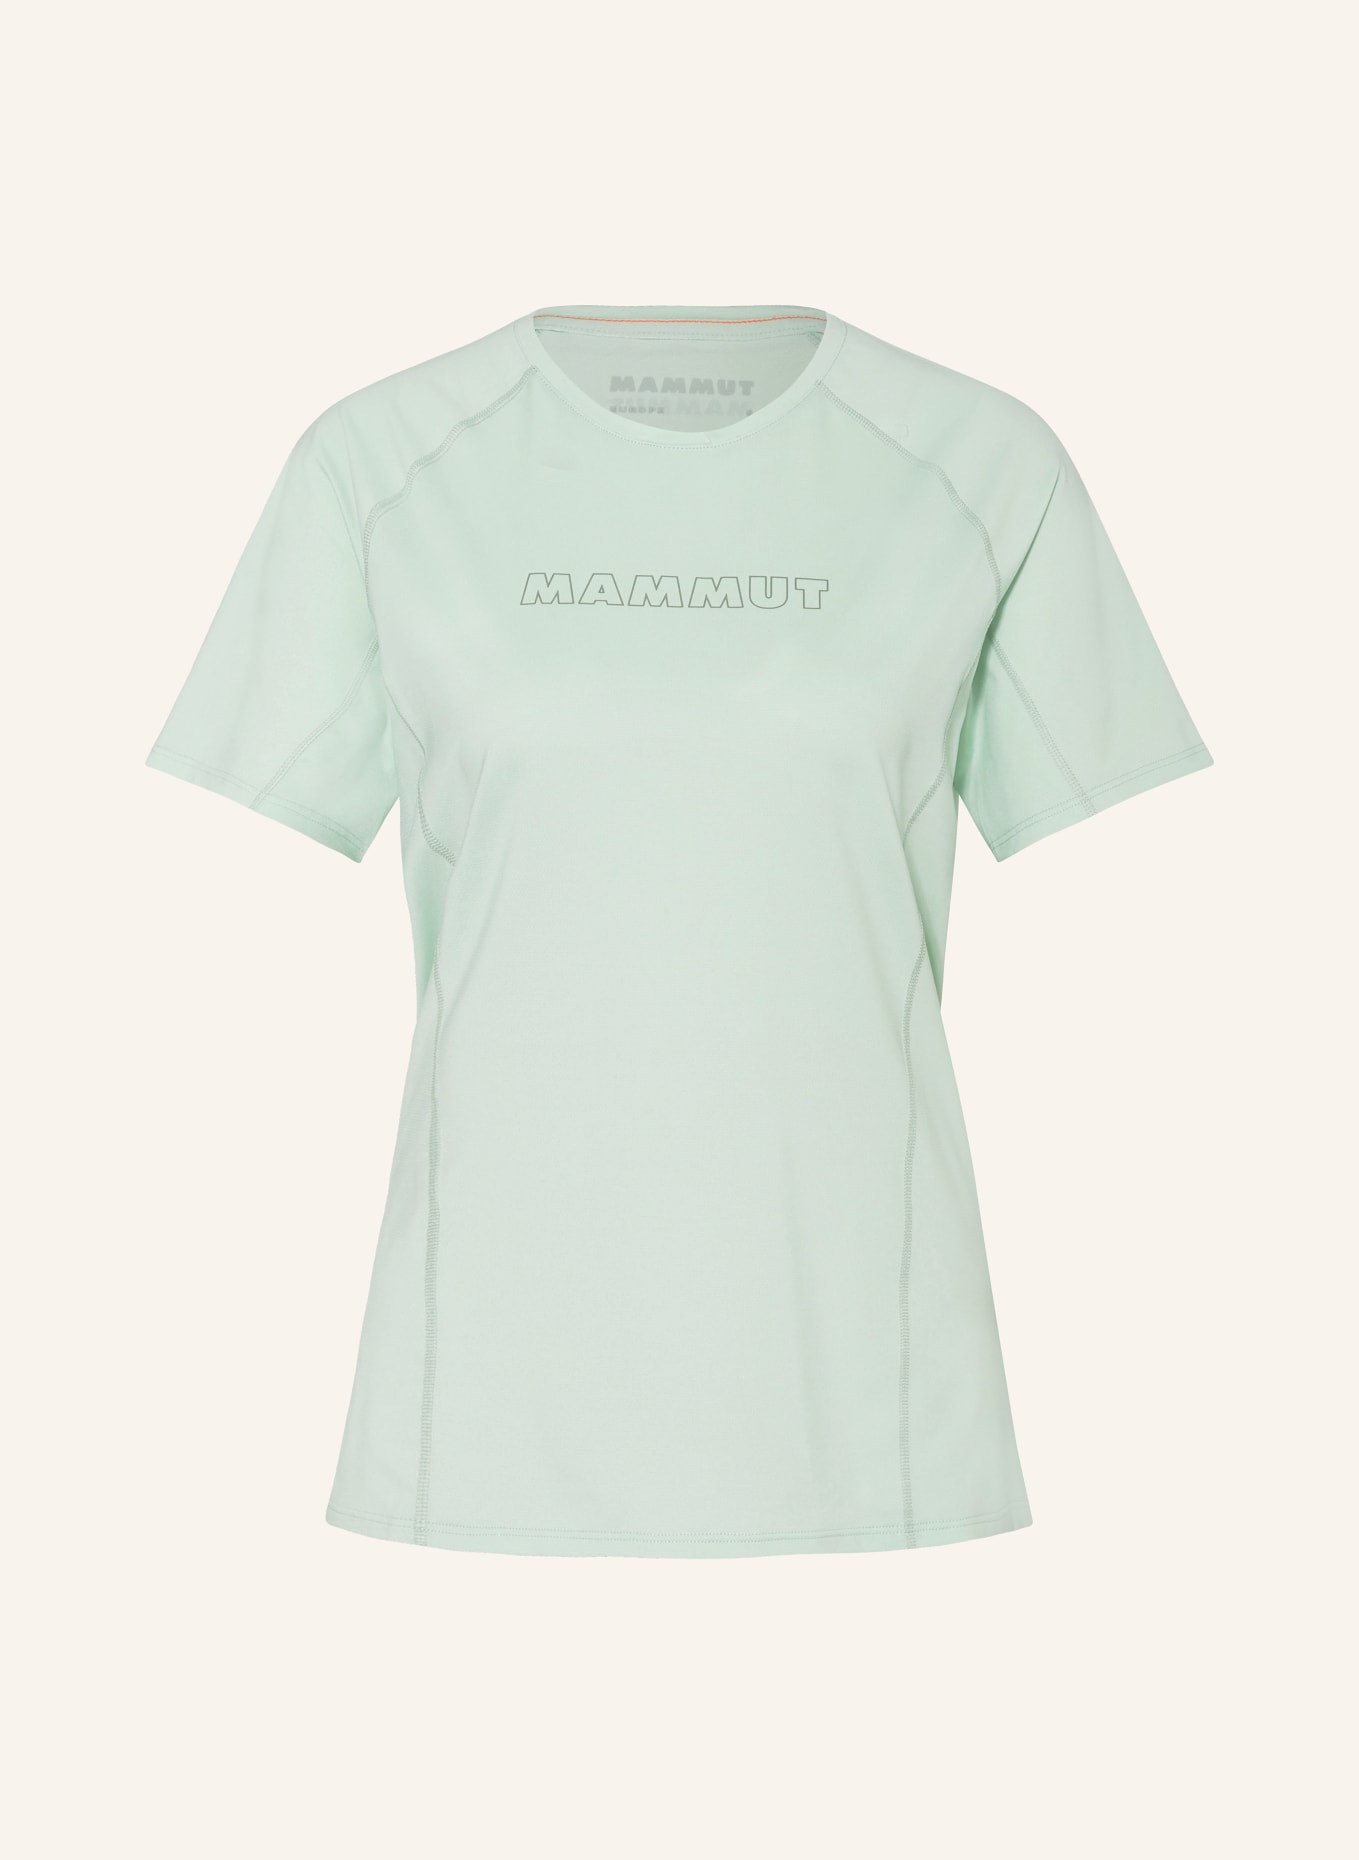 MAMMUT T-Shirt SELUN, Farbe: MINT (Bild 1)